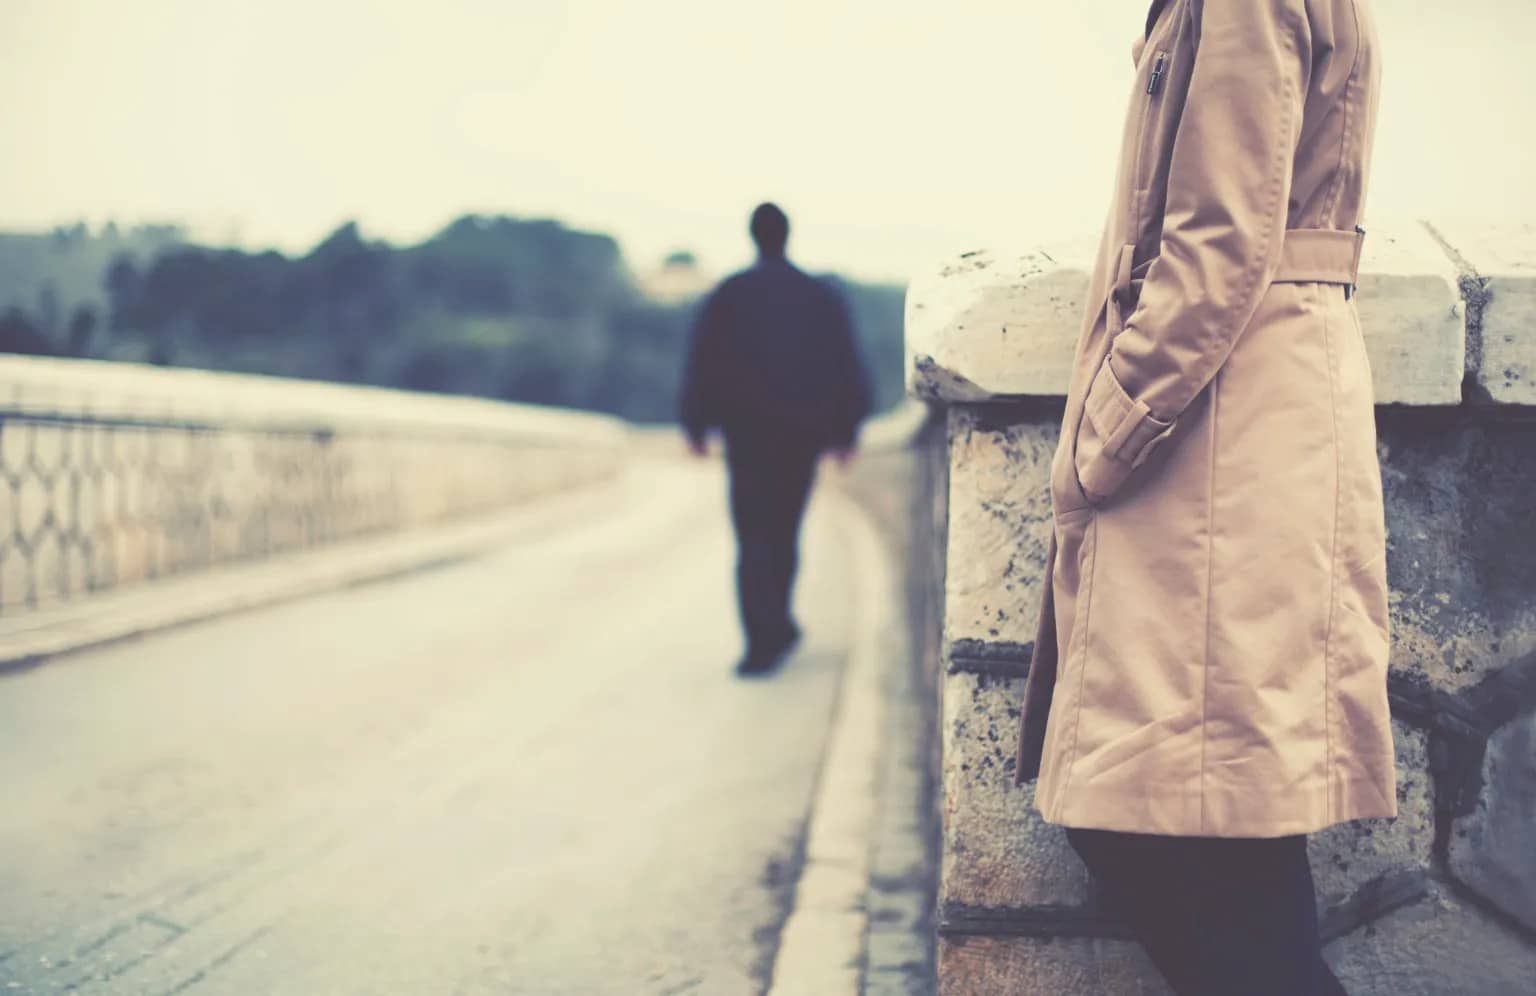 psicologiasdobrasil.com.br - 5 maneiras pelas quais o medo do abandono se manifesta nos relacionamentos